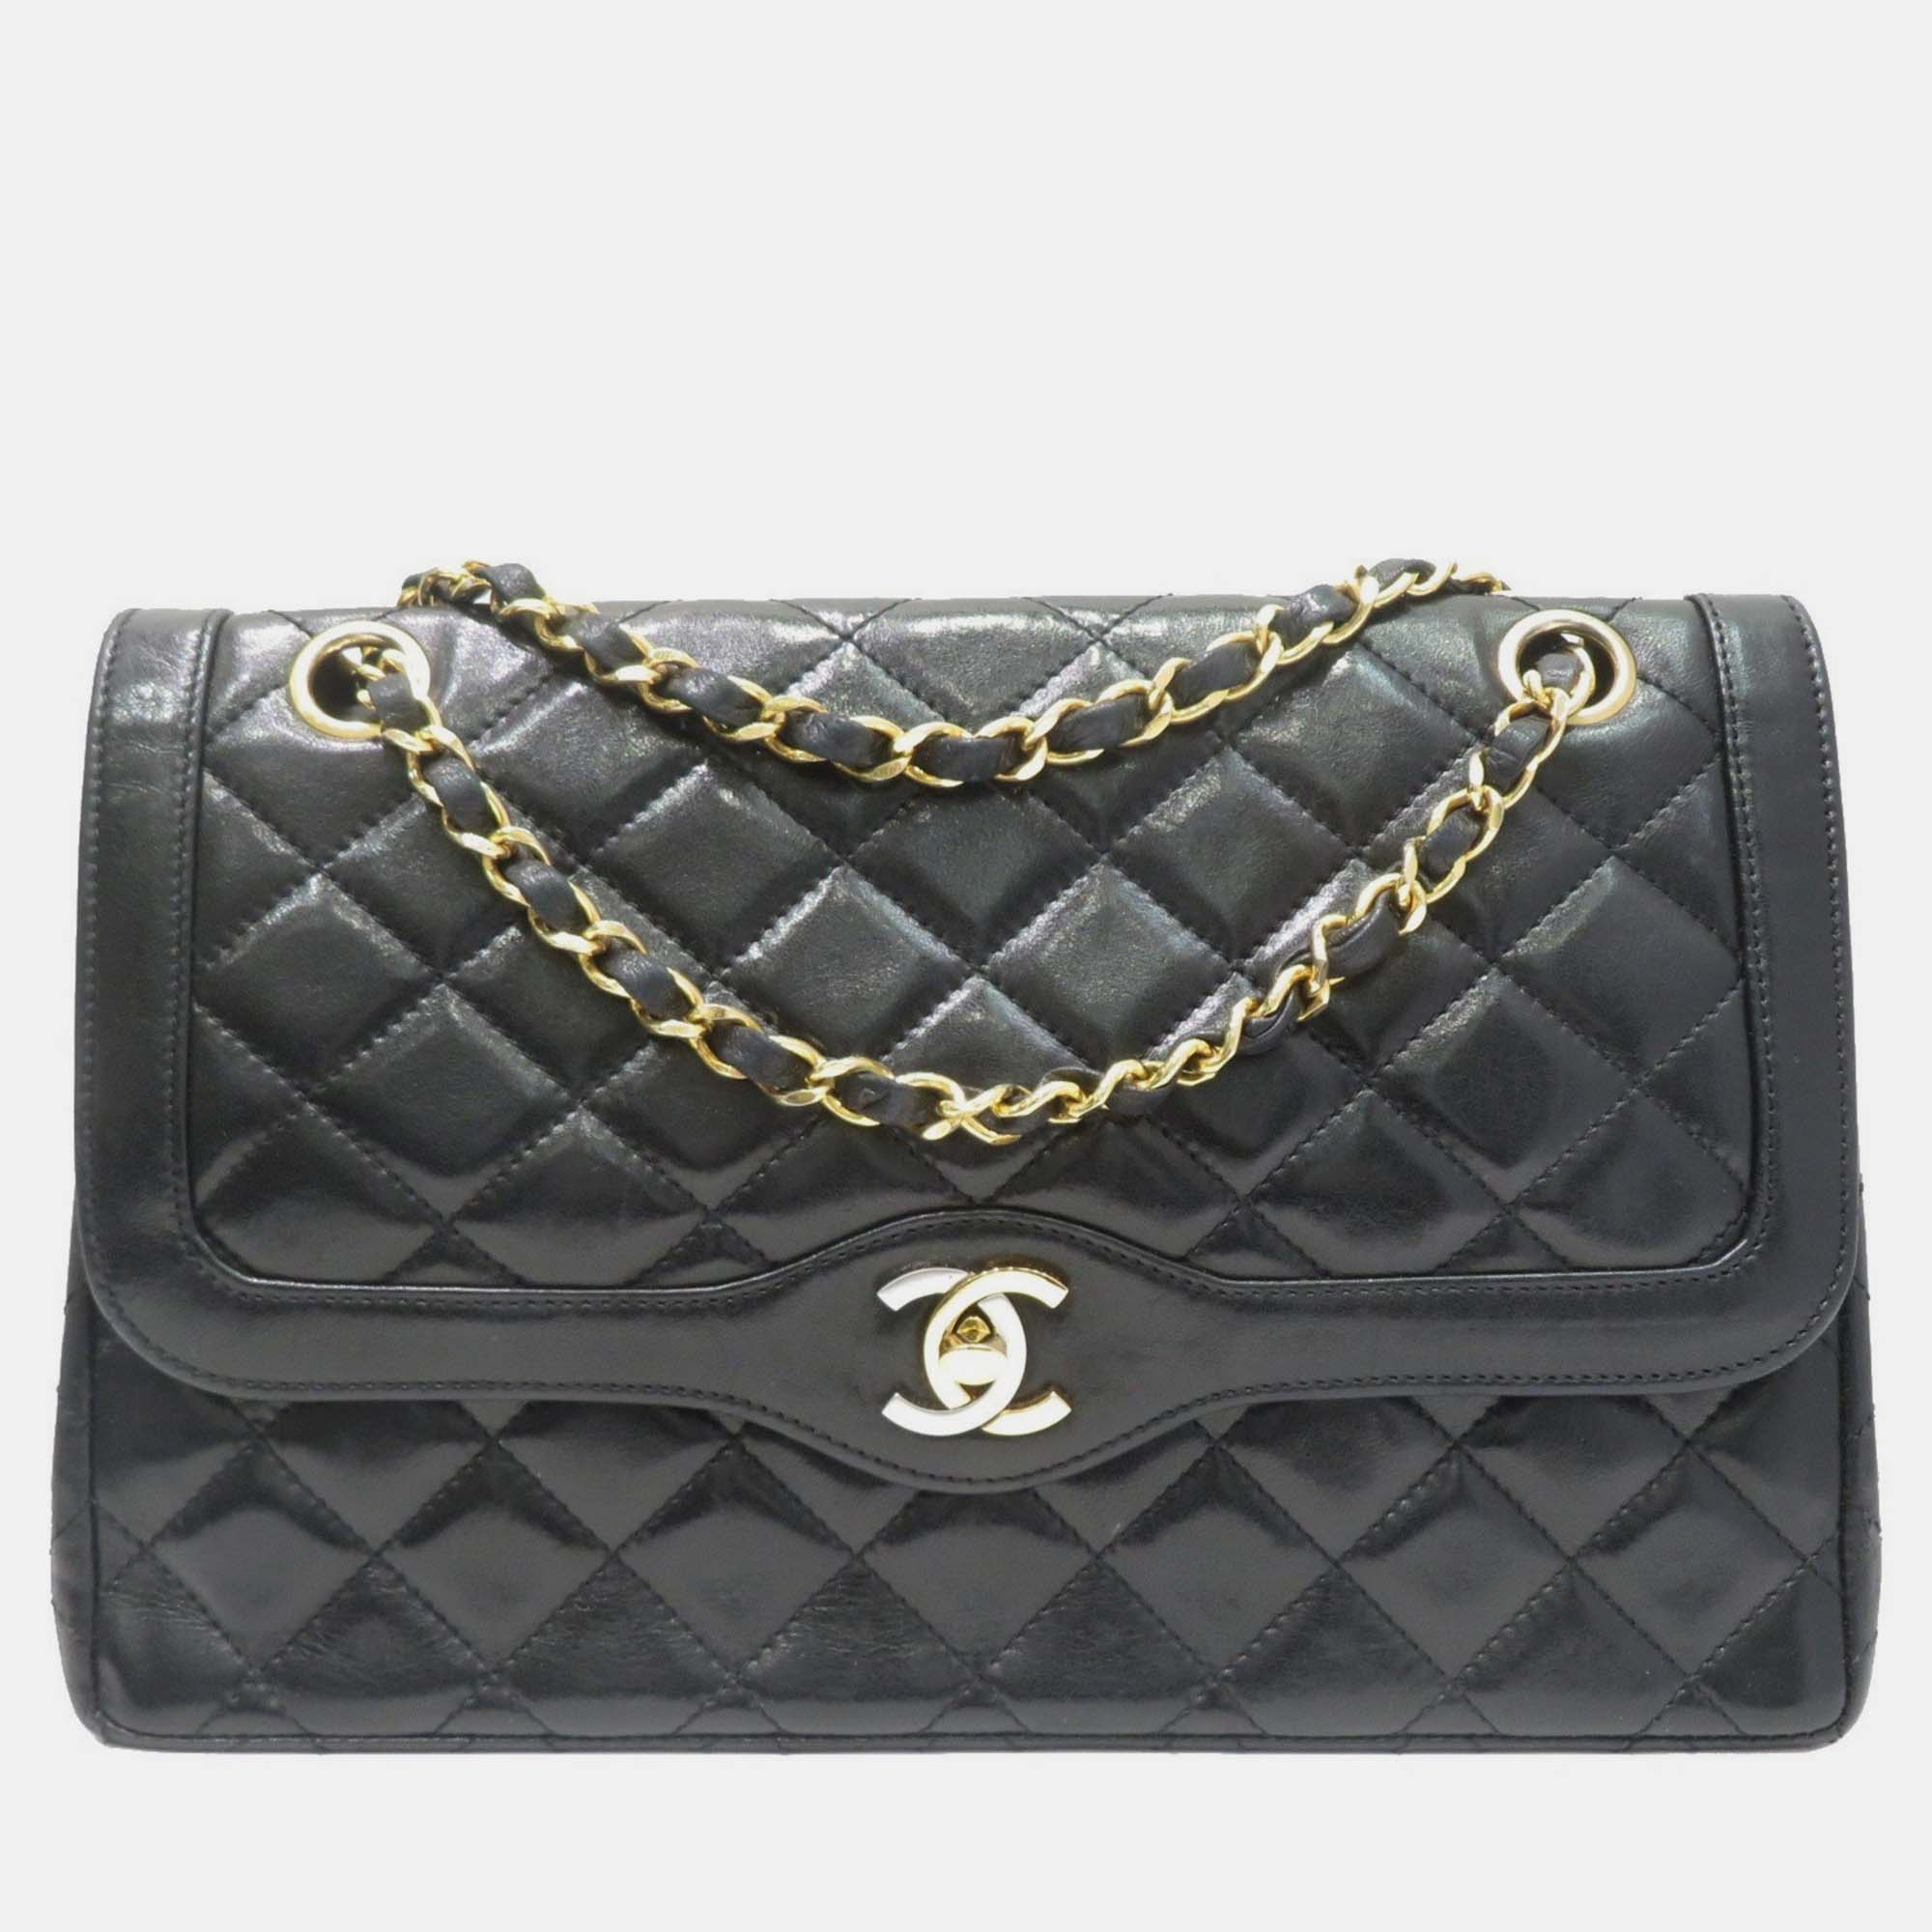 

Chanel Black Leather Small Paris Double Flap Bag